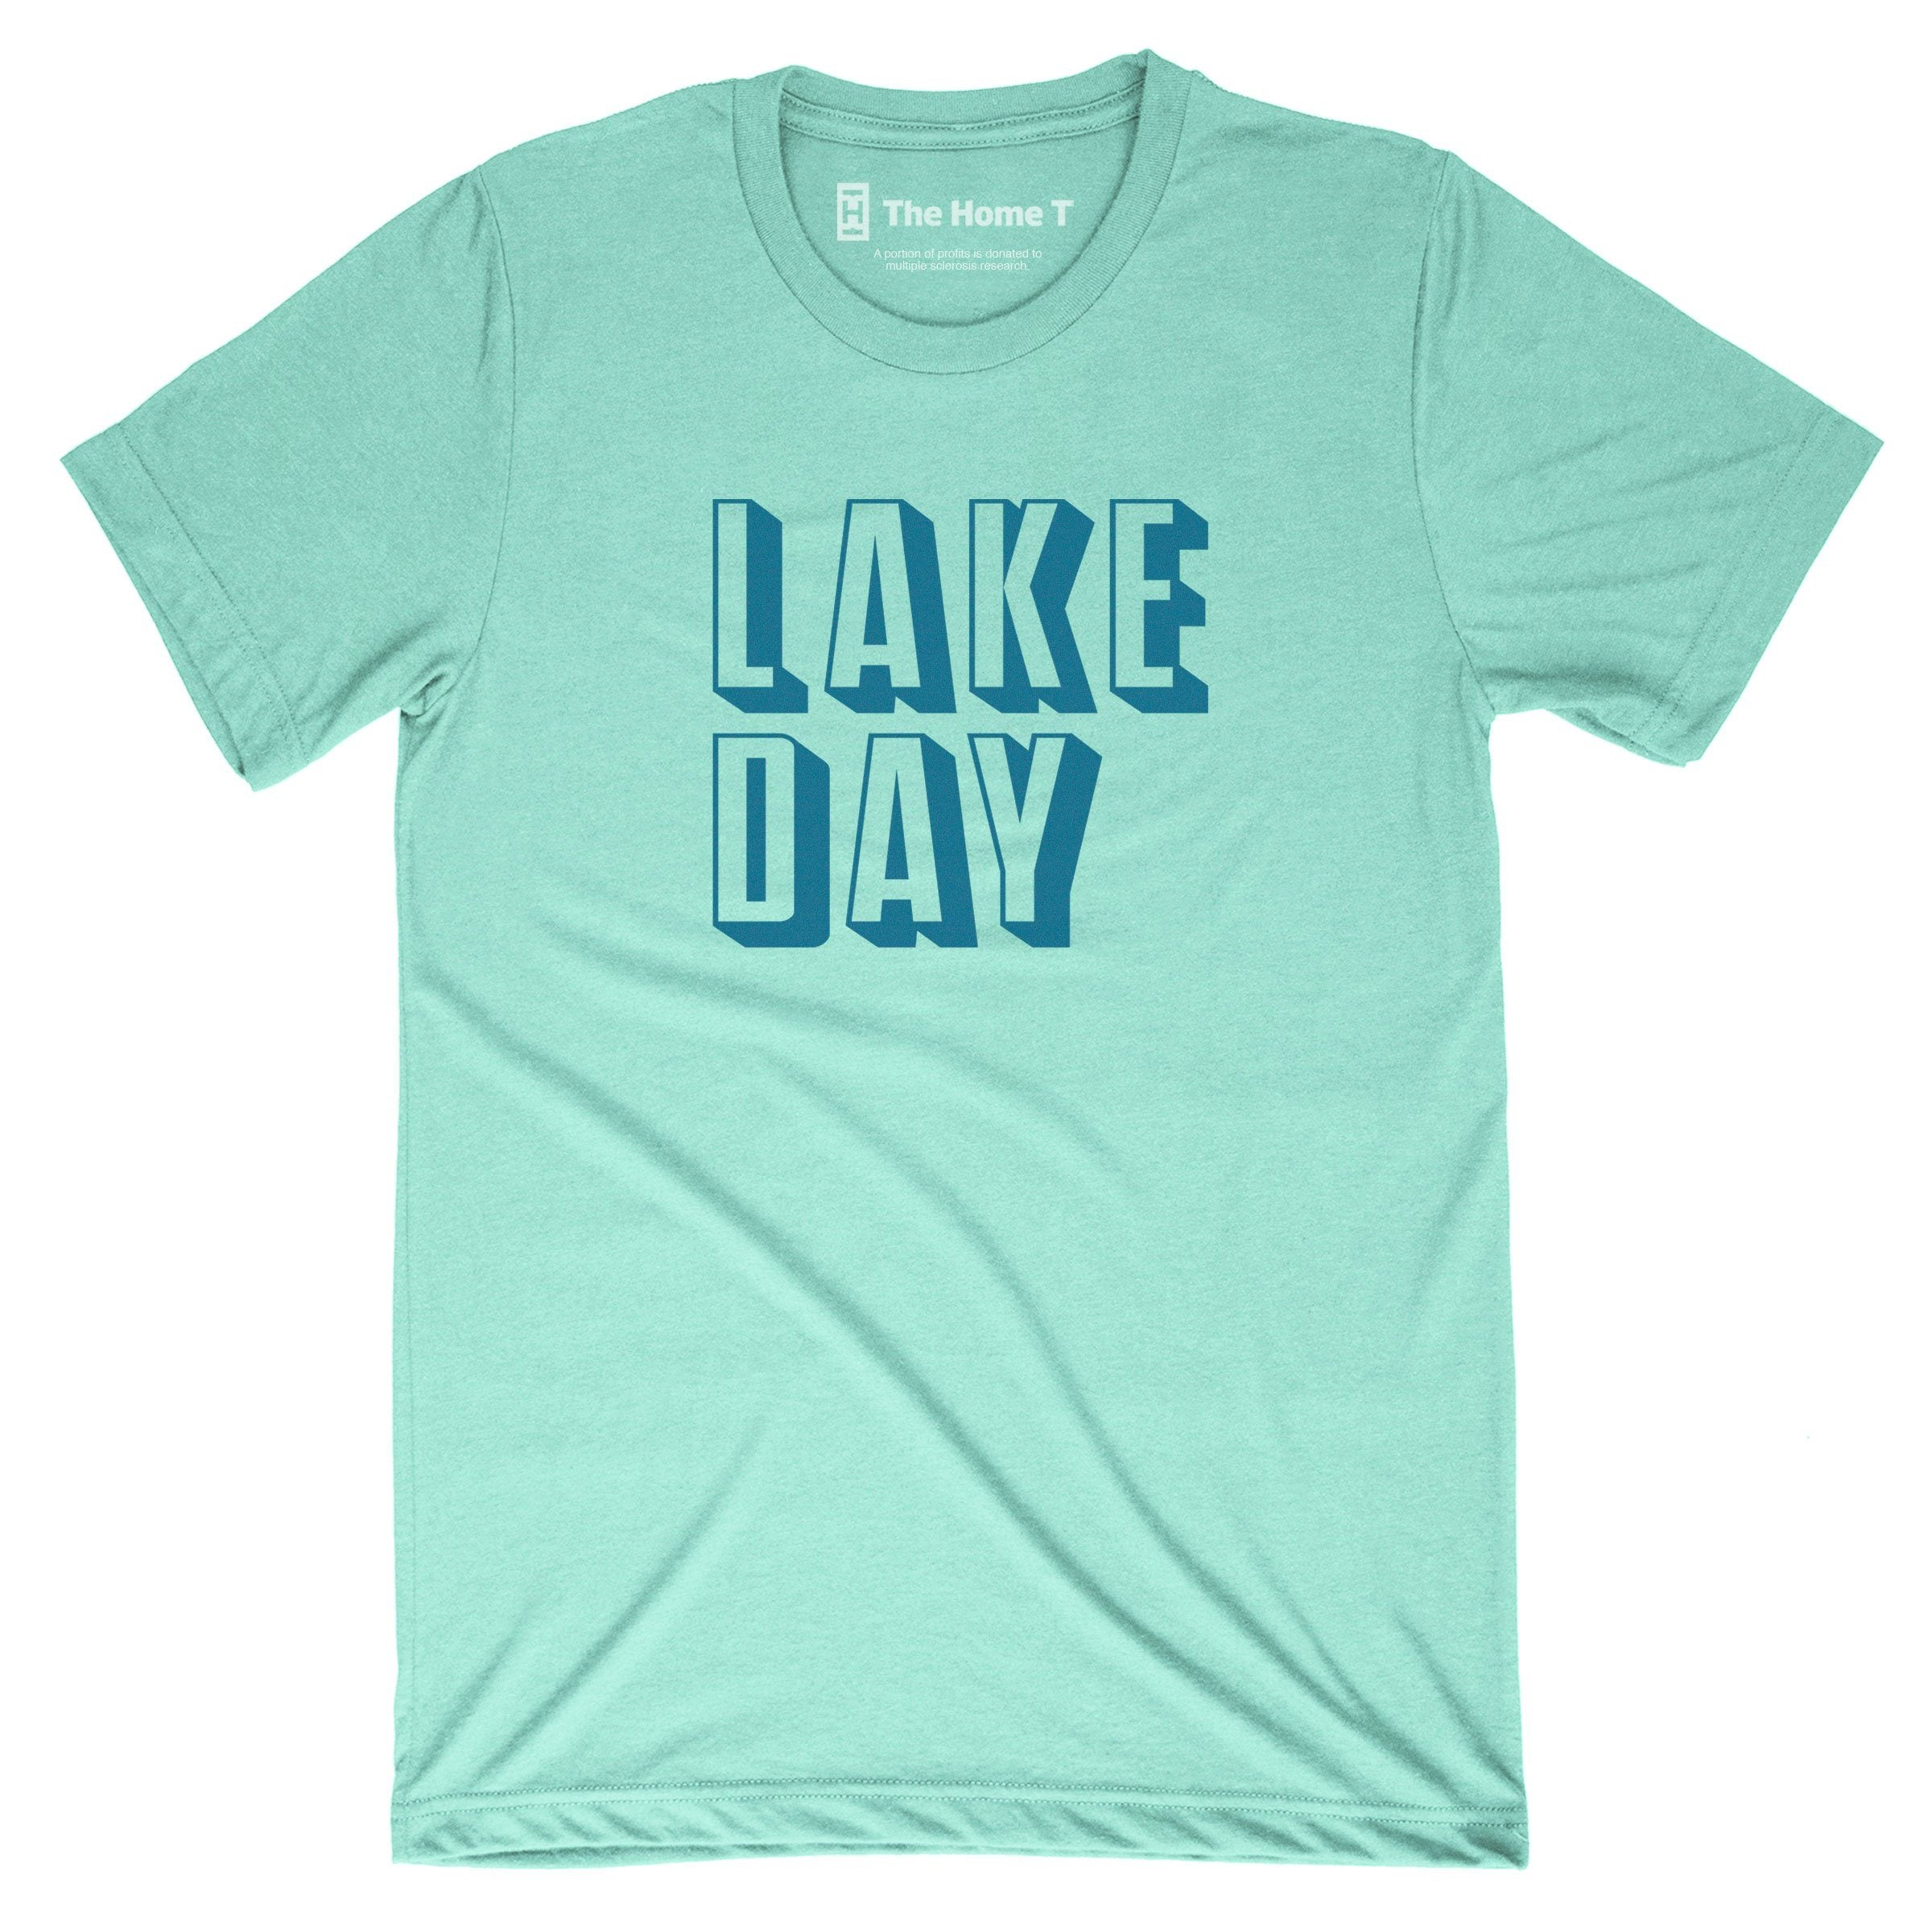 LAKE DAY